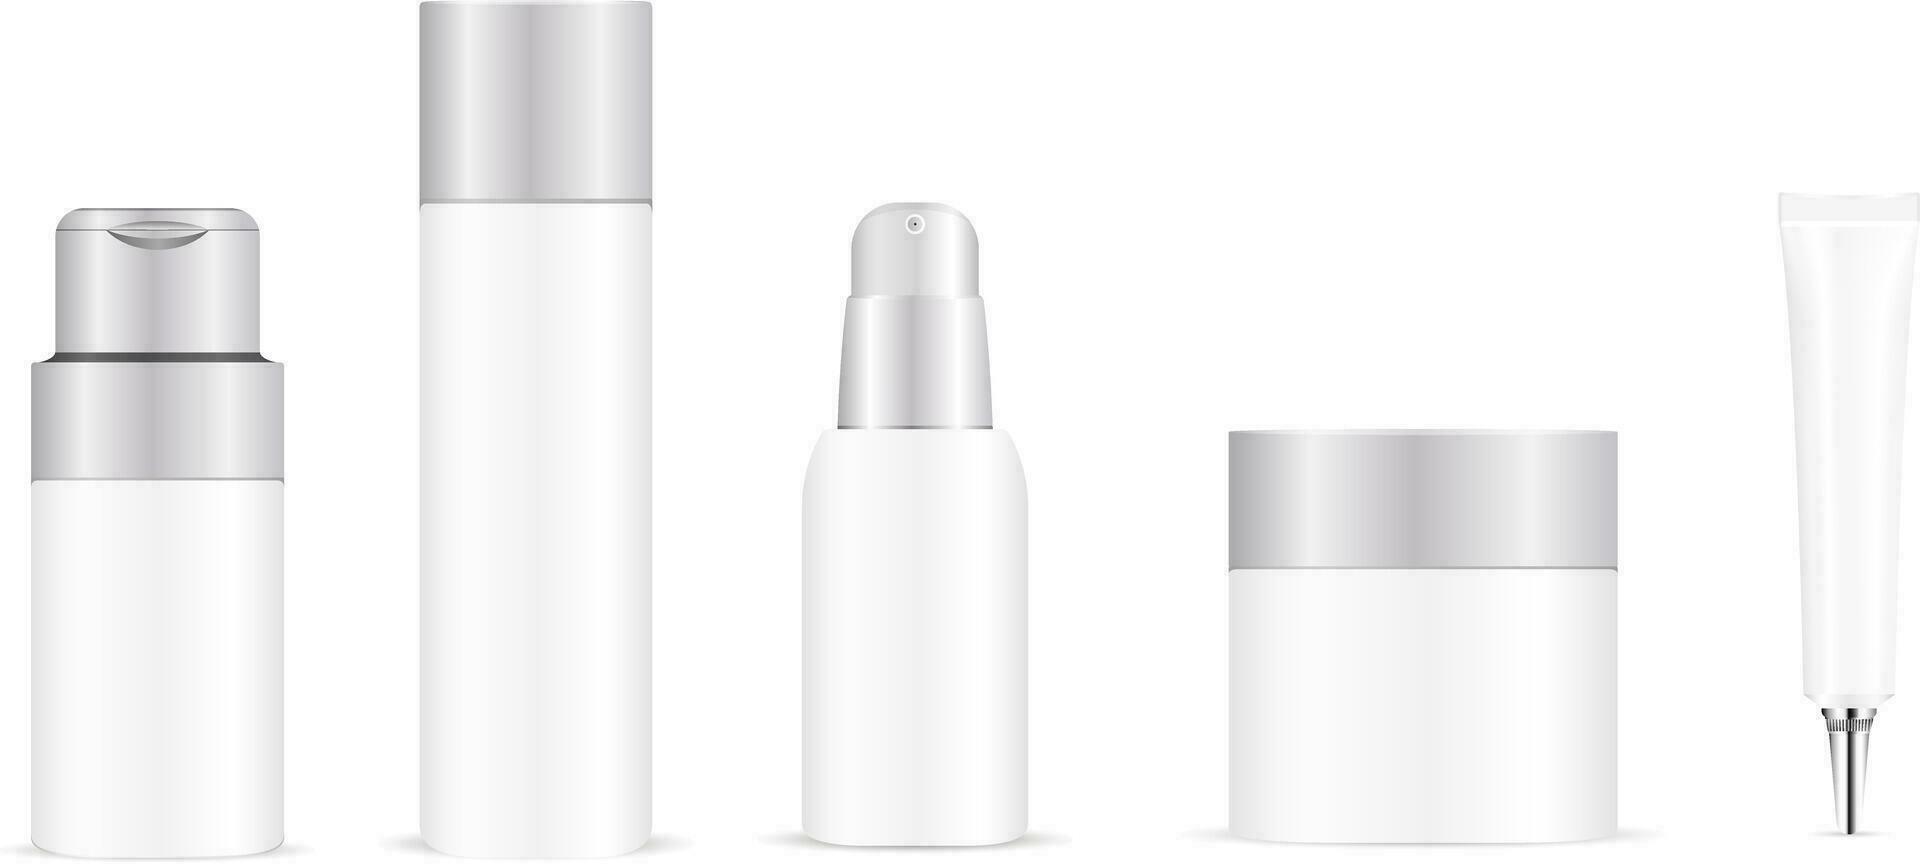 wit fles mockup sjabloon voor haar- zorg of huid zorg producten. vector illustratie set.